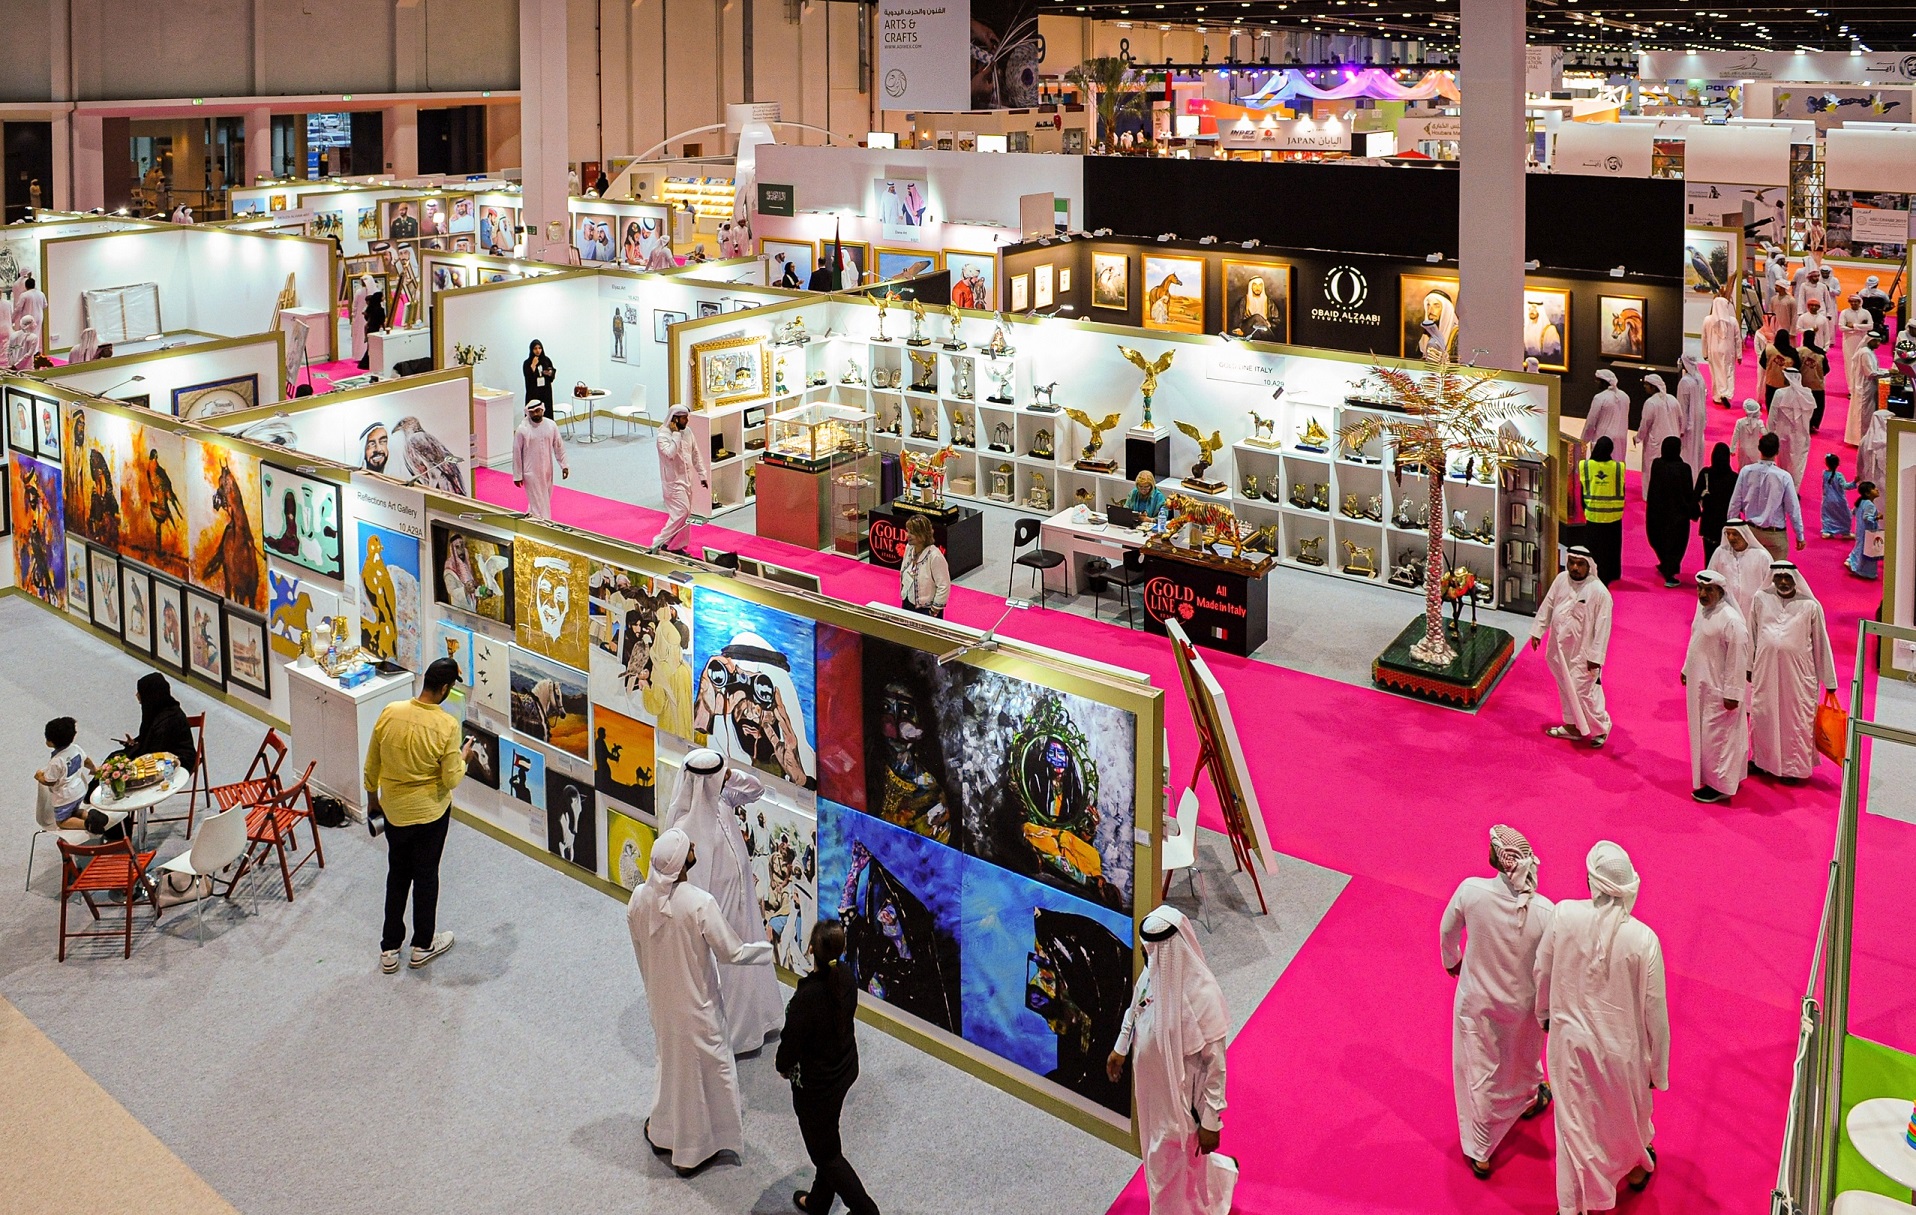  125 فنّاناً إماراتياً وعربياً وعالمياً يعرضون إبداعاتهم في معرض أبوظبي الدولي للصيد  صور